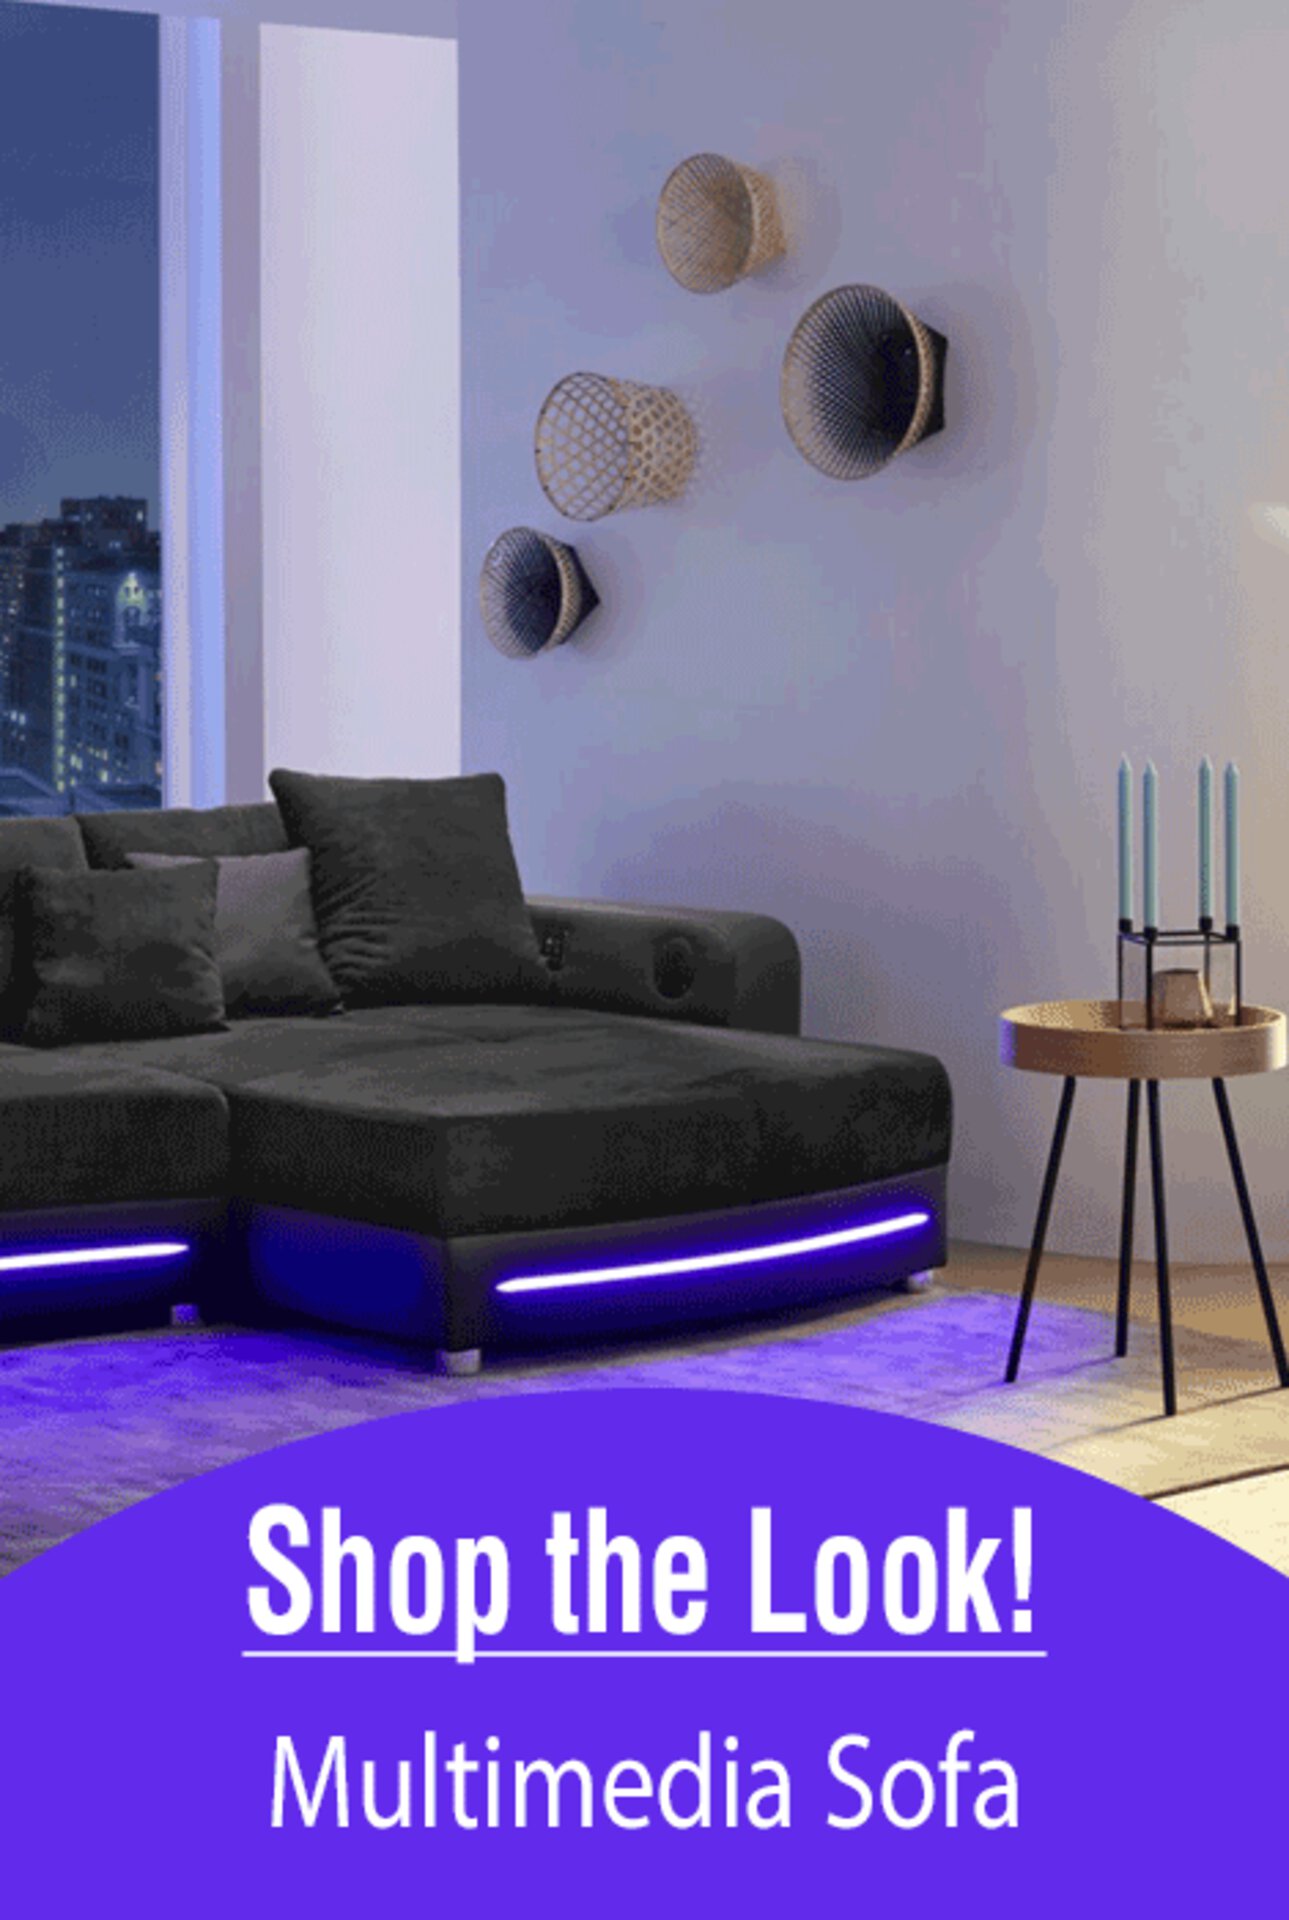 Zum Shop-the-Look Multimedia-Sofa - inspirierende Einrichtungsidee von Möbel Inhofer